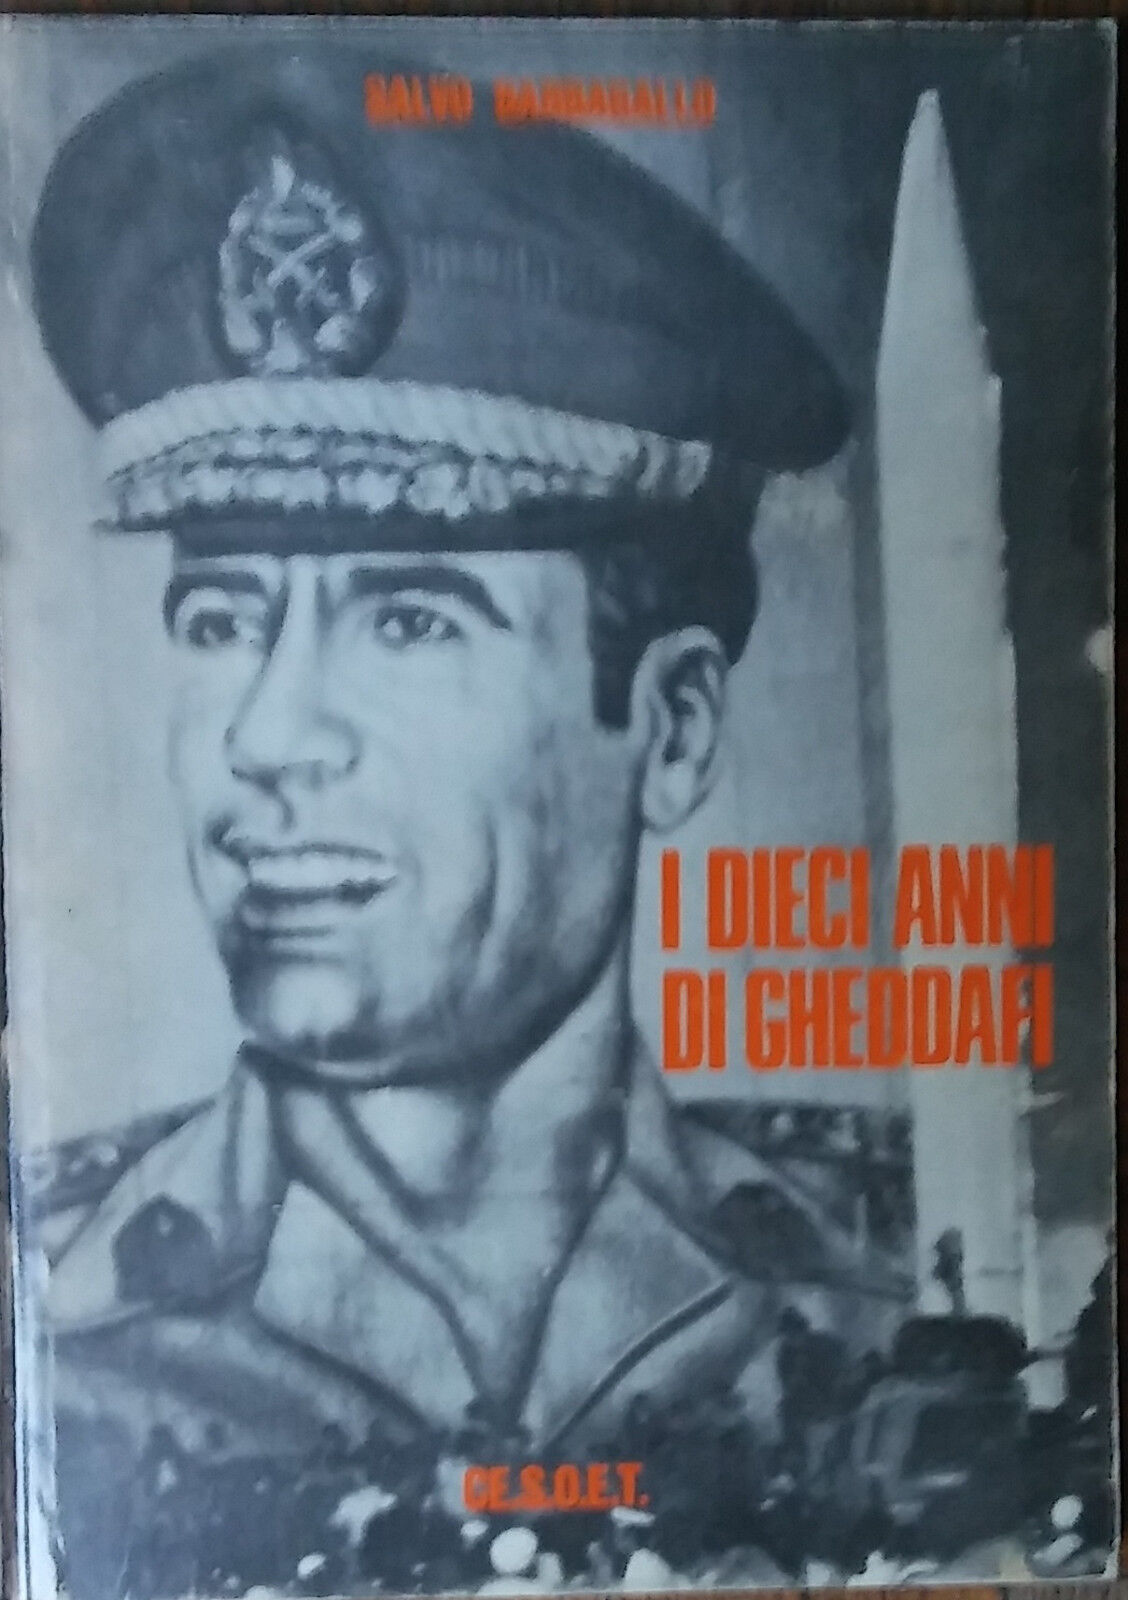 I dieci anni di Gheddafi - Salvo Barbagallo - Ce.s.o.e.t,1980 - R